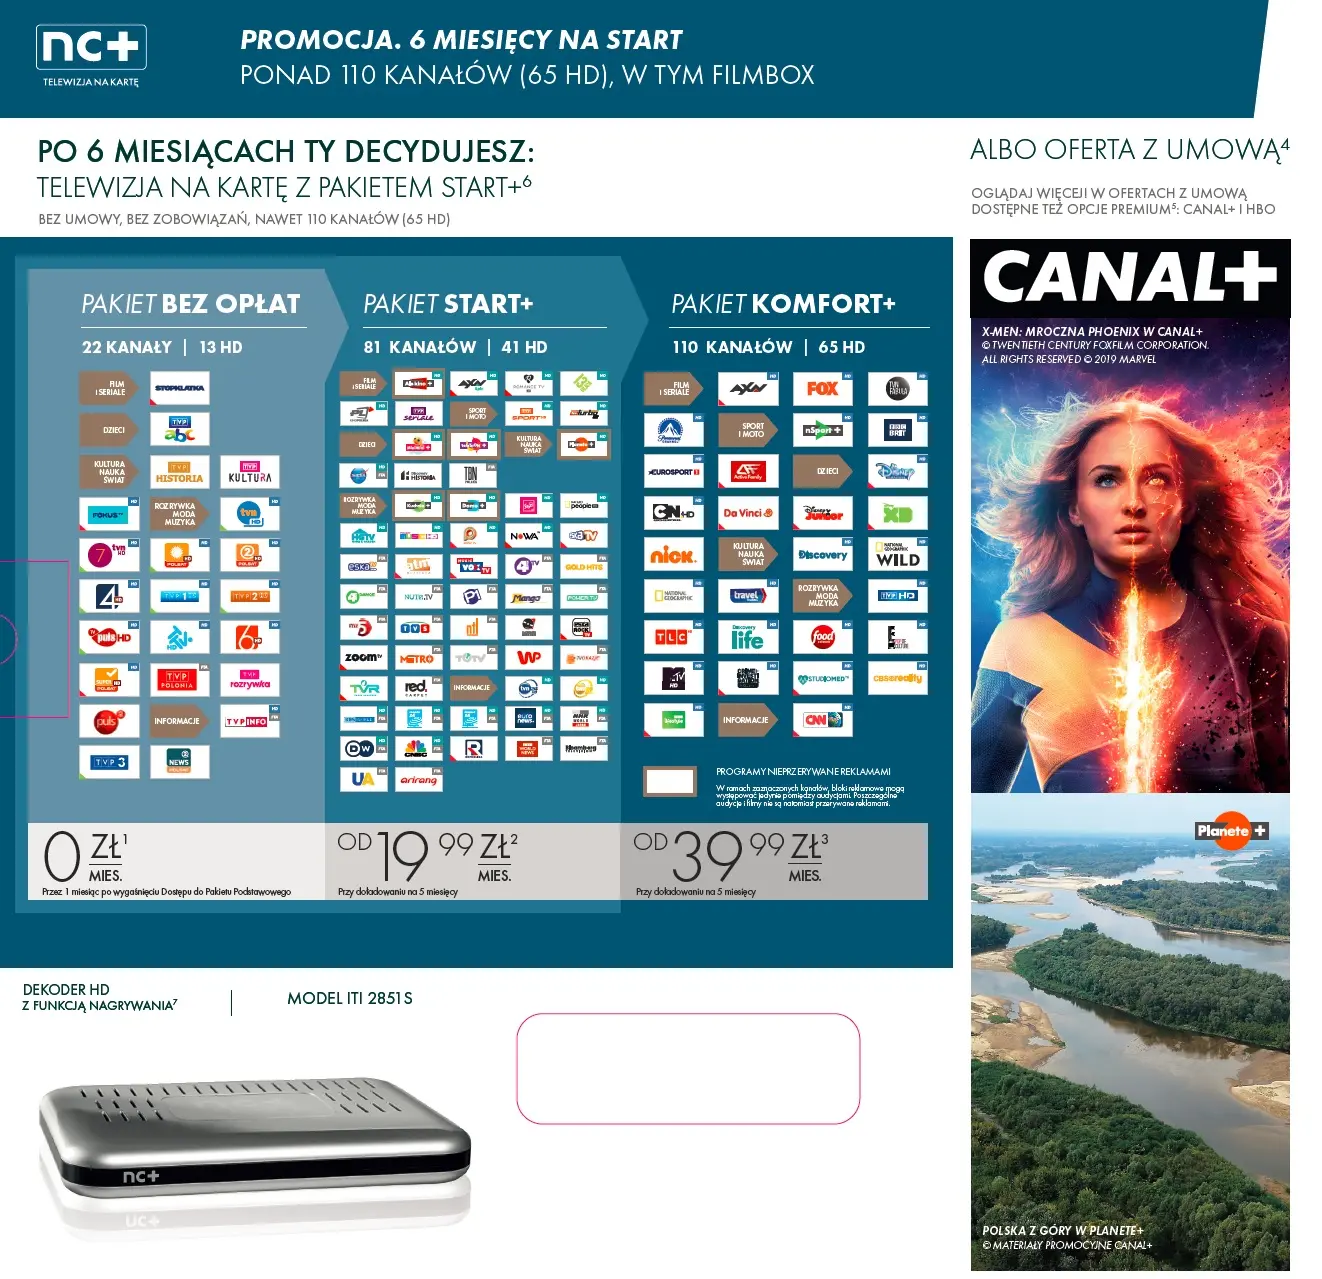 Usługa nc+ telewizja na kartę z Pakietem KOMFORT+ 6miesięcy z ADB-2851